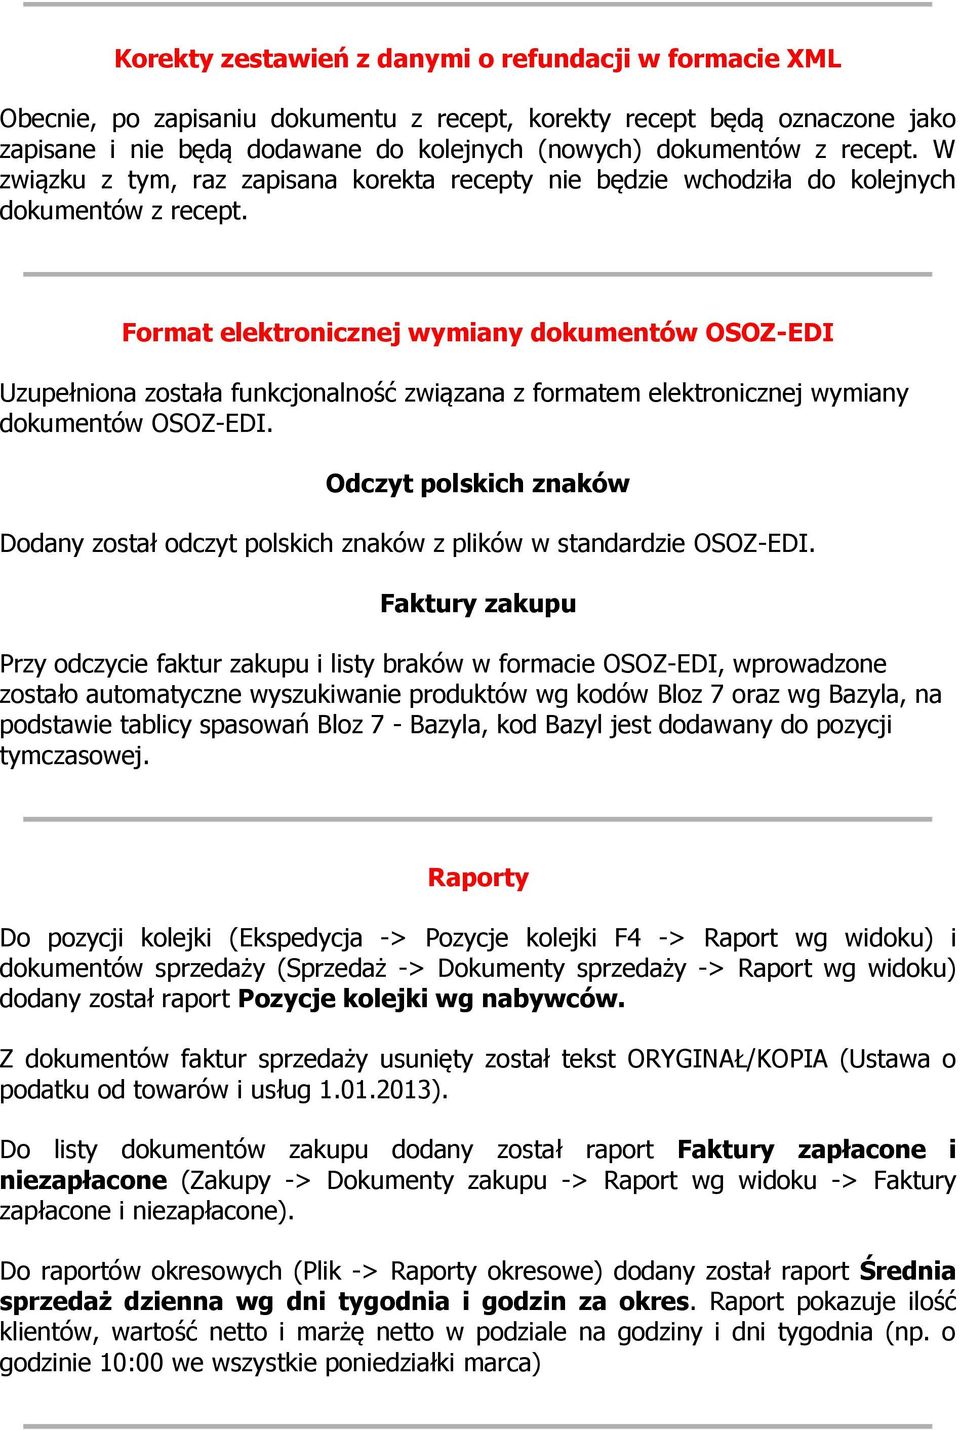 Format elektronicznej wymiany dokumentów OSOZ-EDI Uzupełniona została funkcjonalność związana z formatem elektronicznej wymiany dokumentów OSOZ-EDI.